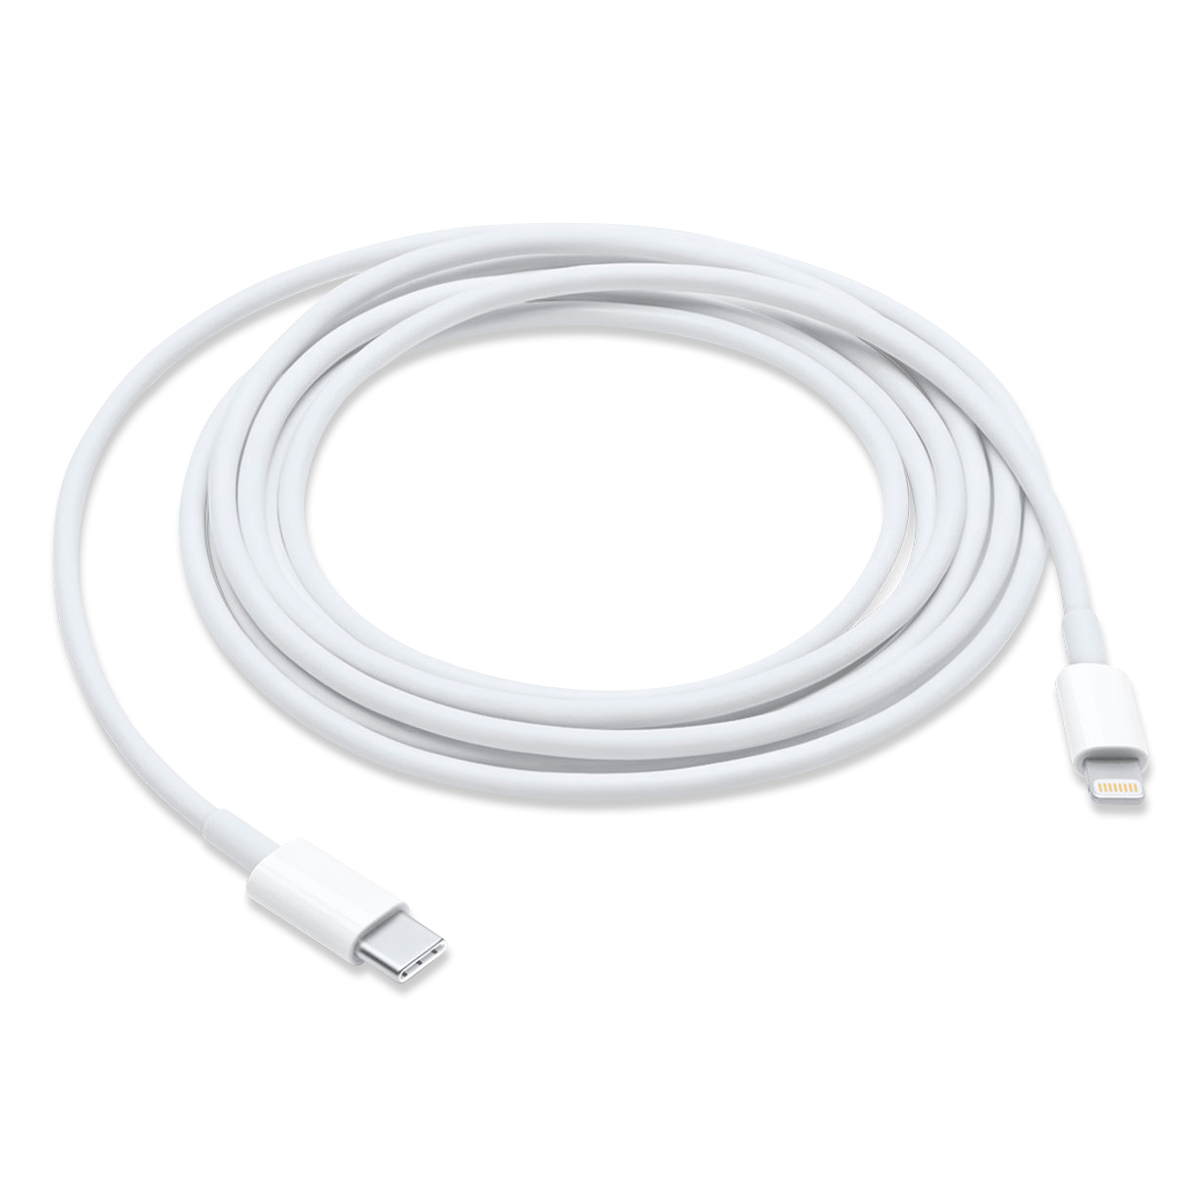 Cable Usb A Iphone Ipad Ipod Carga Rápida 2.0 Y Sincronización 1,2 M -  Blanco con Ofertas en Carrefour